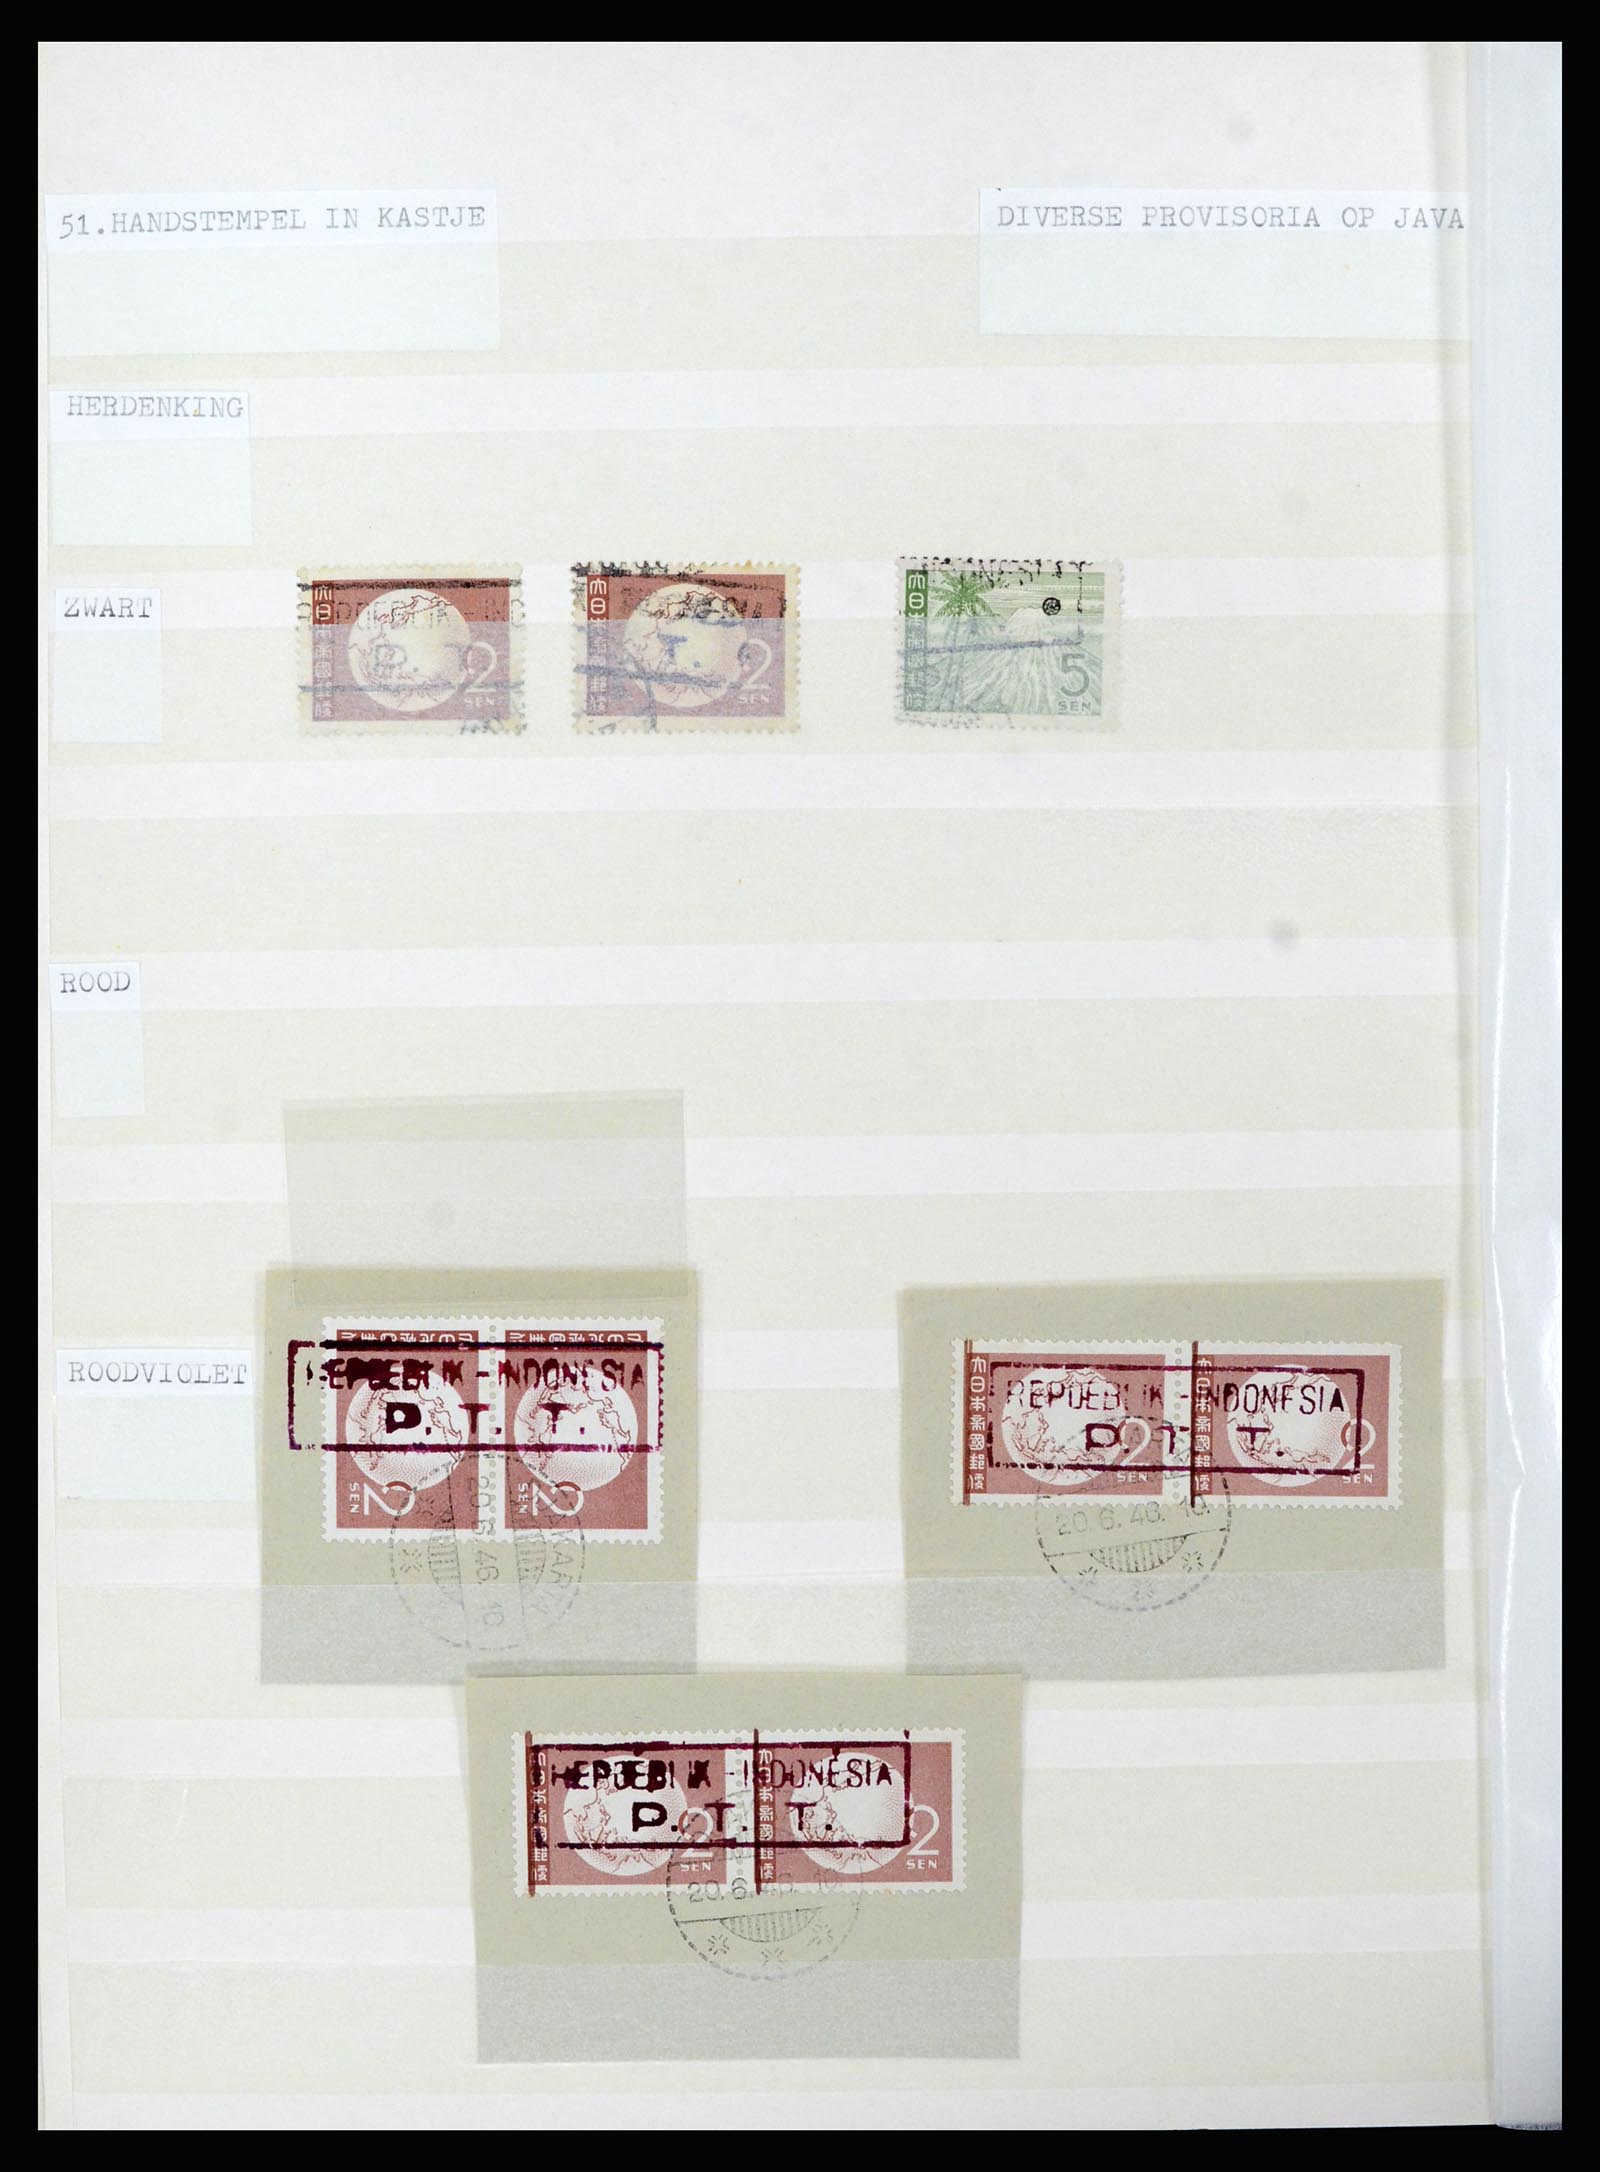 36742 045 - Stamp collection 36742 Dutch Indies interim period 1945-1949.